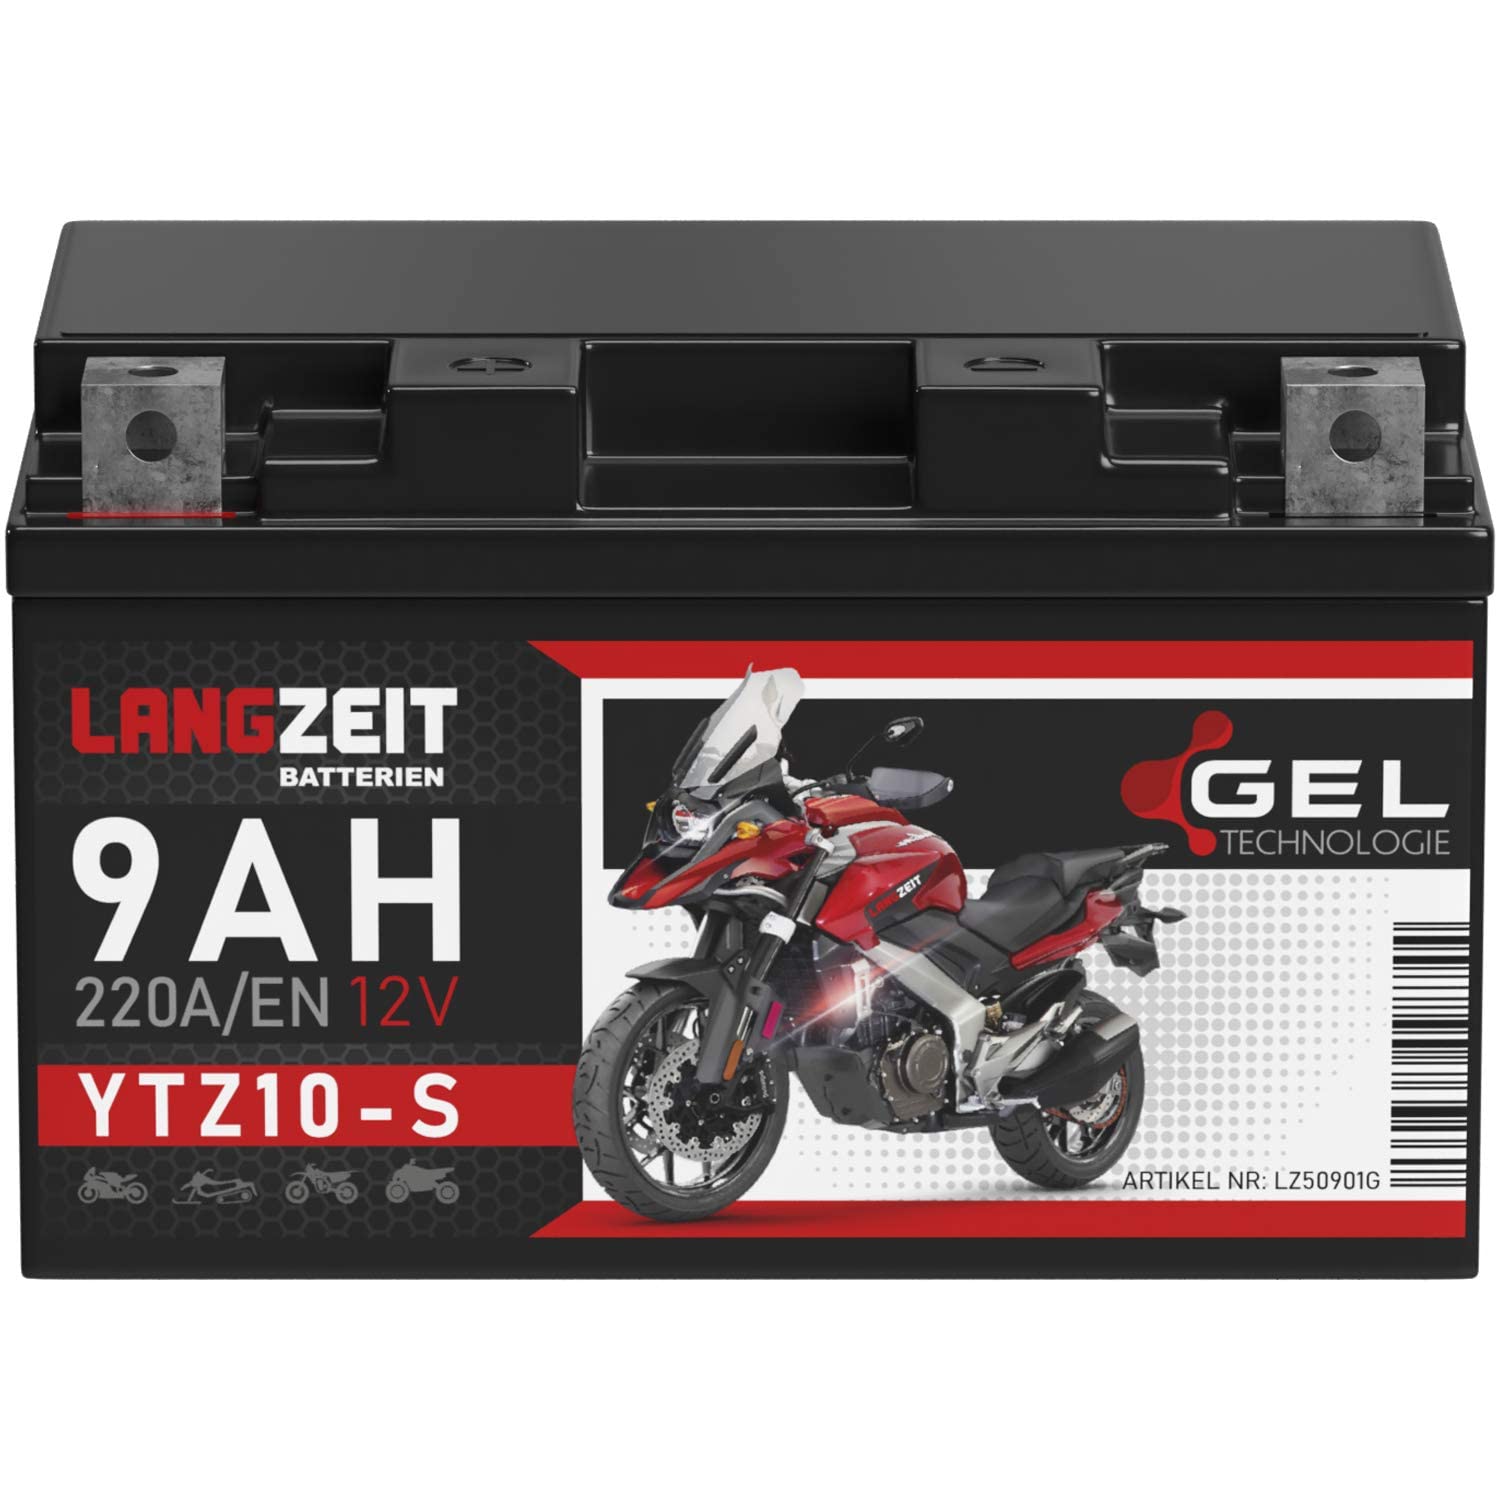 LANGZEIT YTZ10S GEL Motorradbatterie 12V 9Ah 220A/EN YTZ10-S 50901 GTZ10-S Batterie 12V doppelte Lebensdauer vorgeladen auslaufsicher wartungsfrei von LANGZEIT Batterien